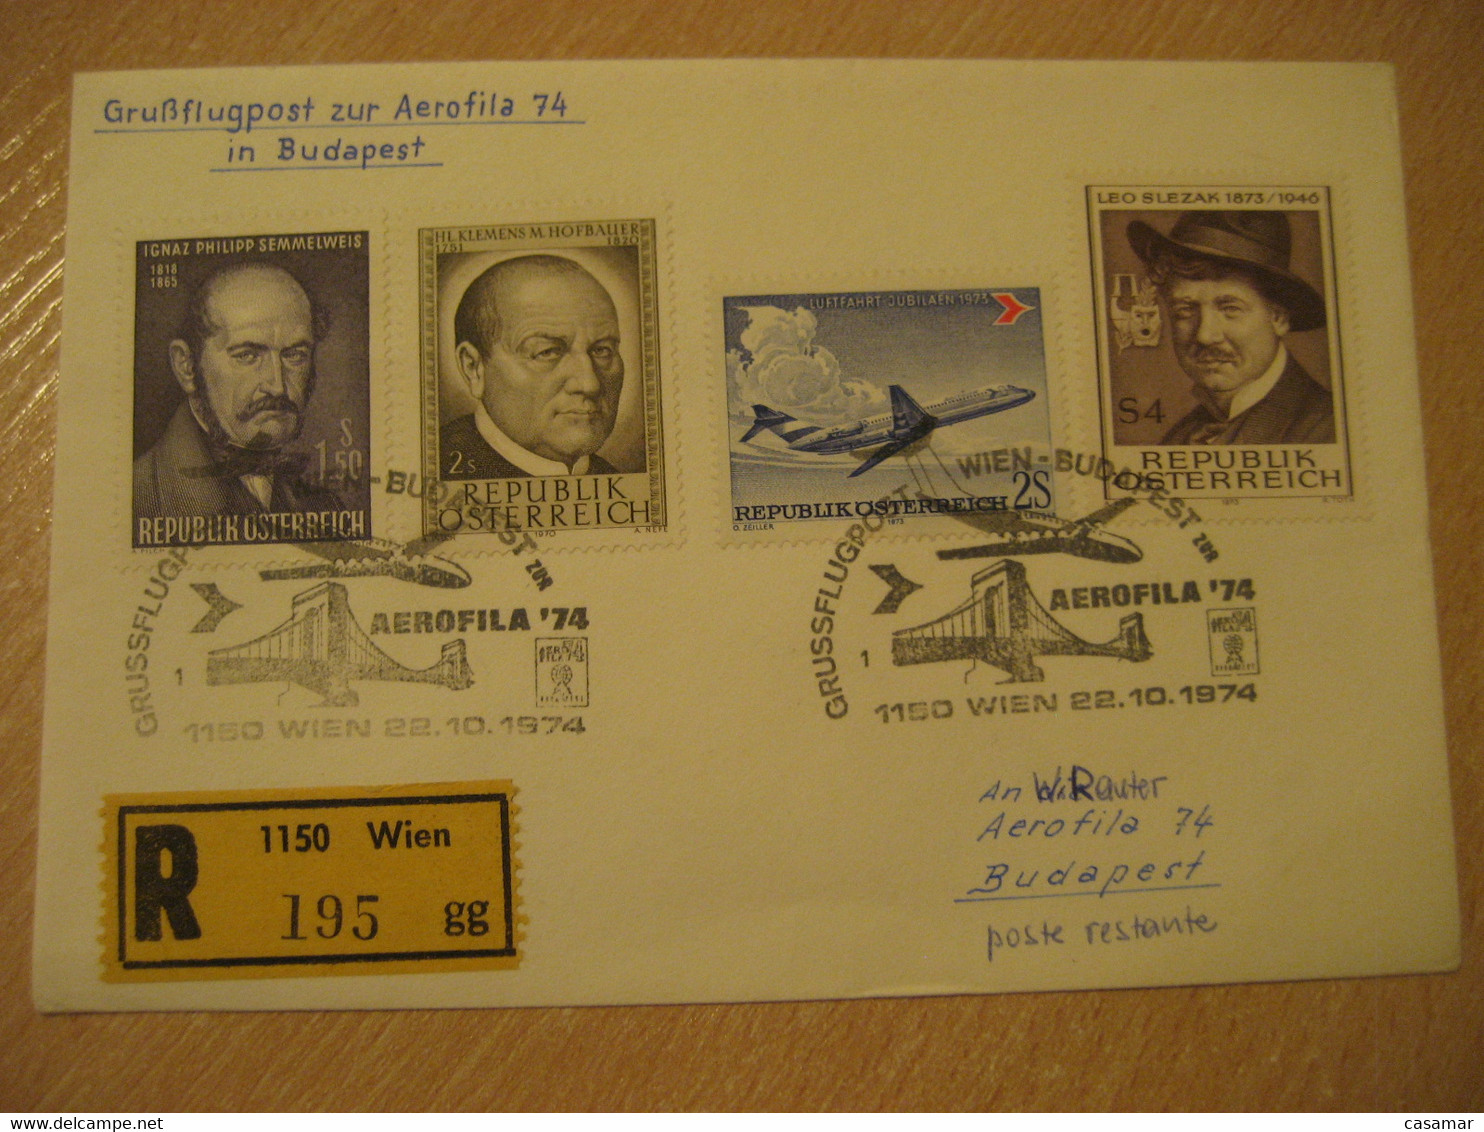 BUDAPEST Wien 1974 First Flight Cancel Registered Cover HUNGARY AUSTRIA - Briefe U. Dokumente